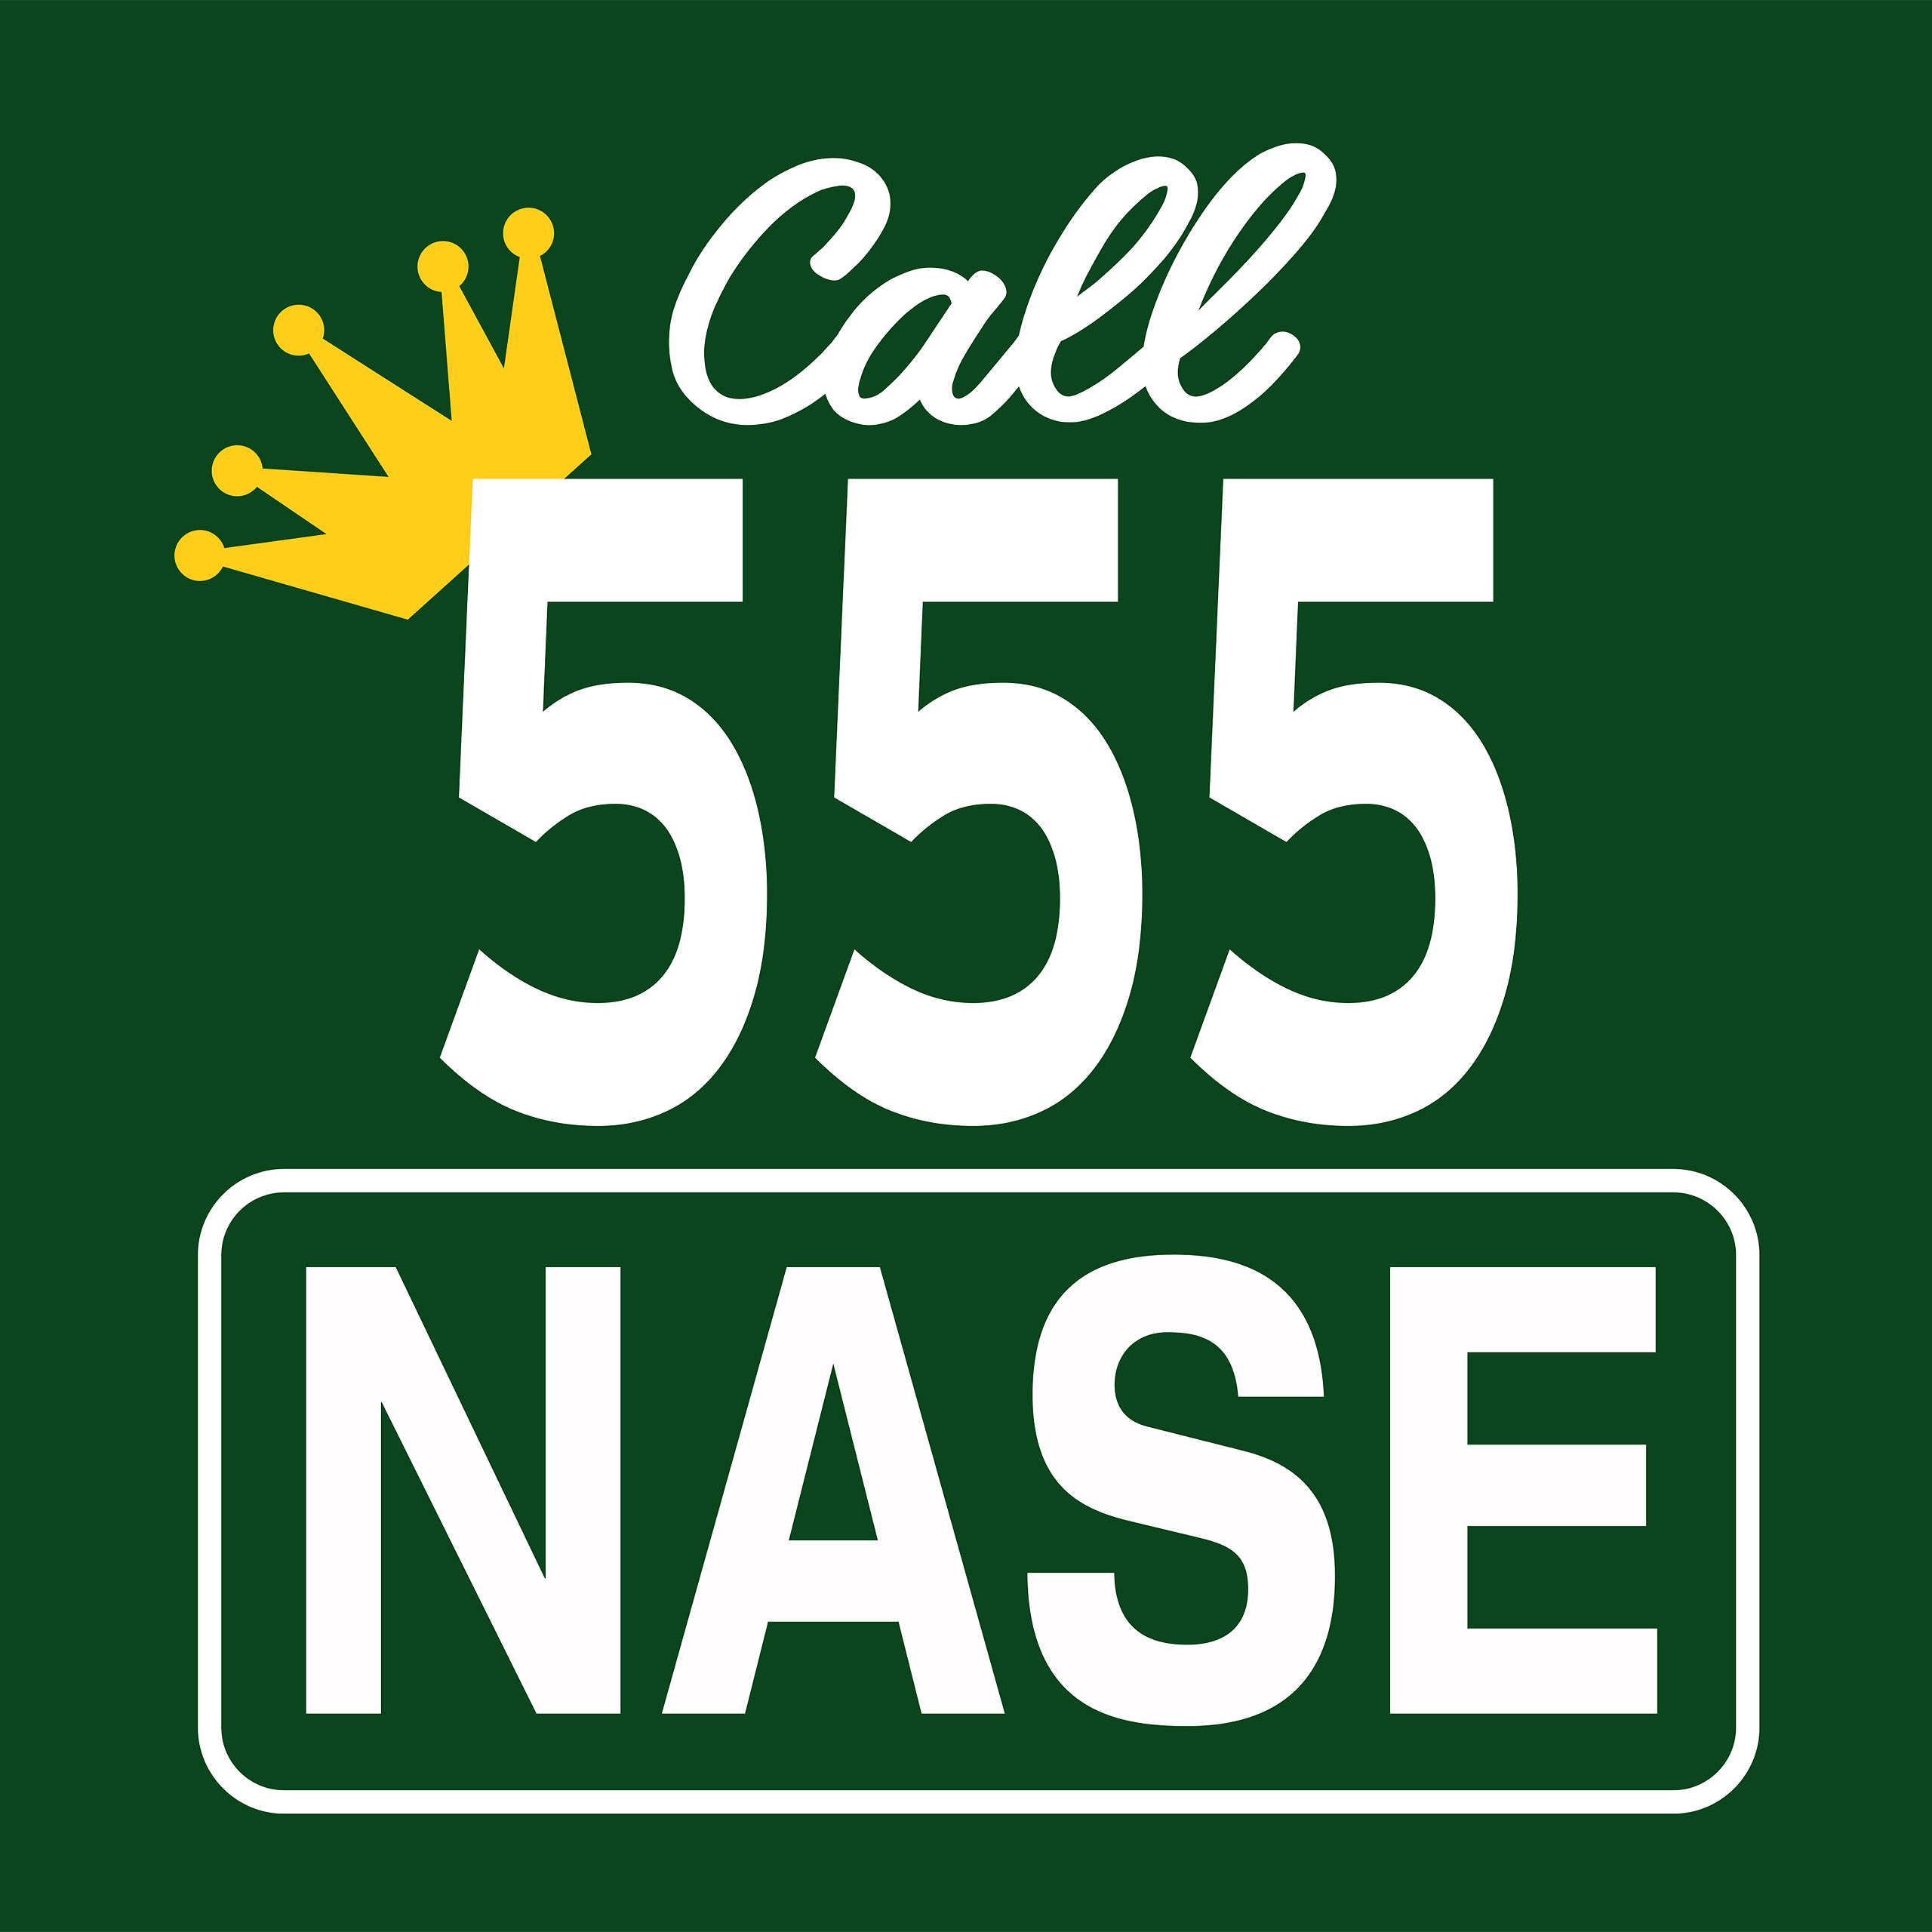 Call 555 Neus T-Shirt voor King of Queens Fans groen